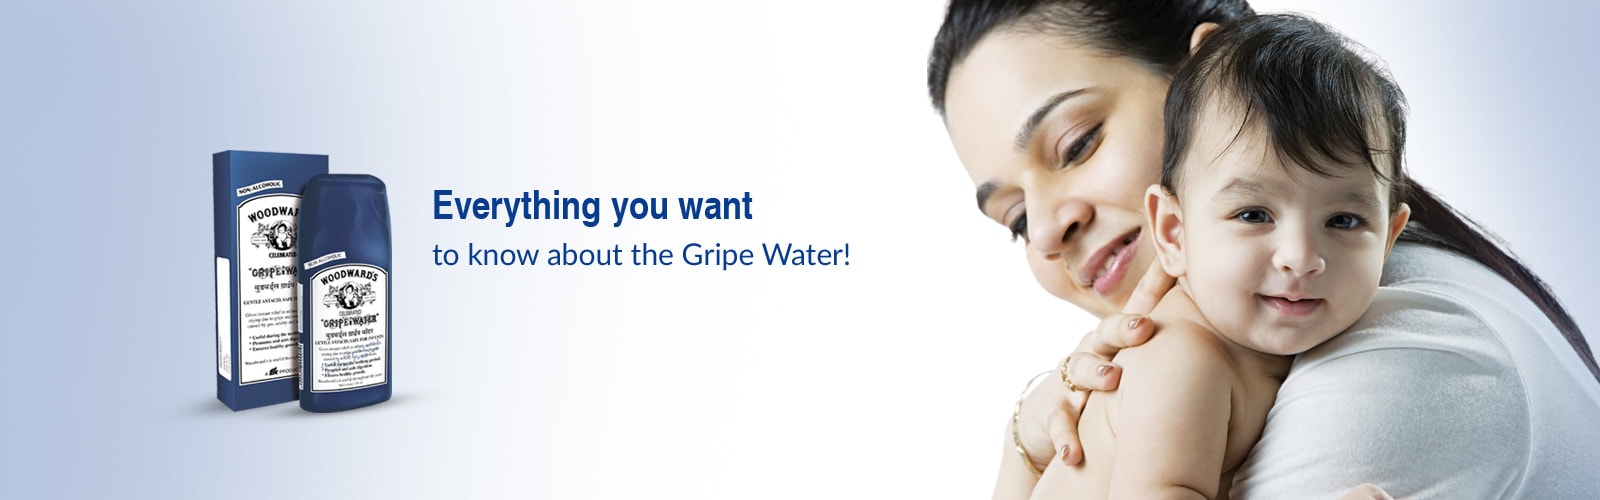 Gripe Water 